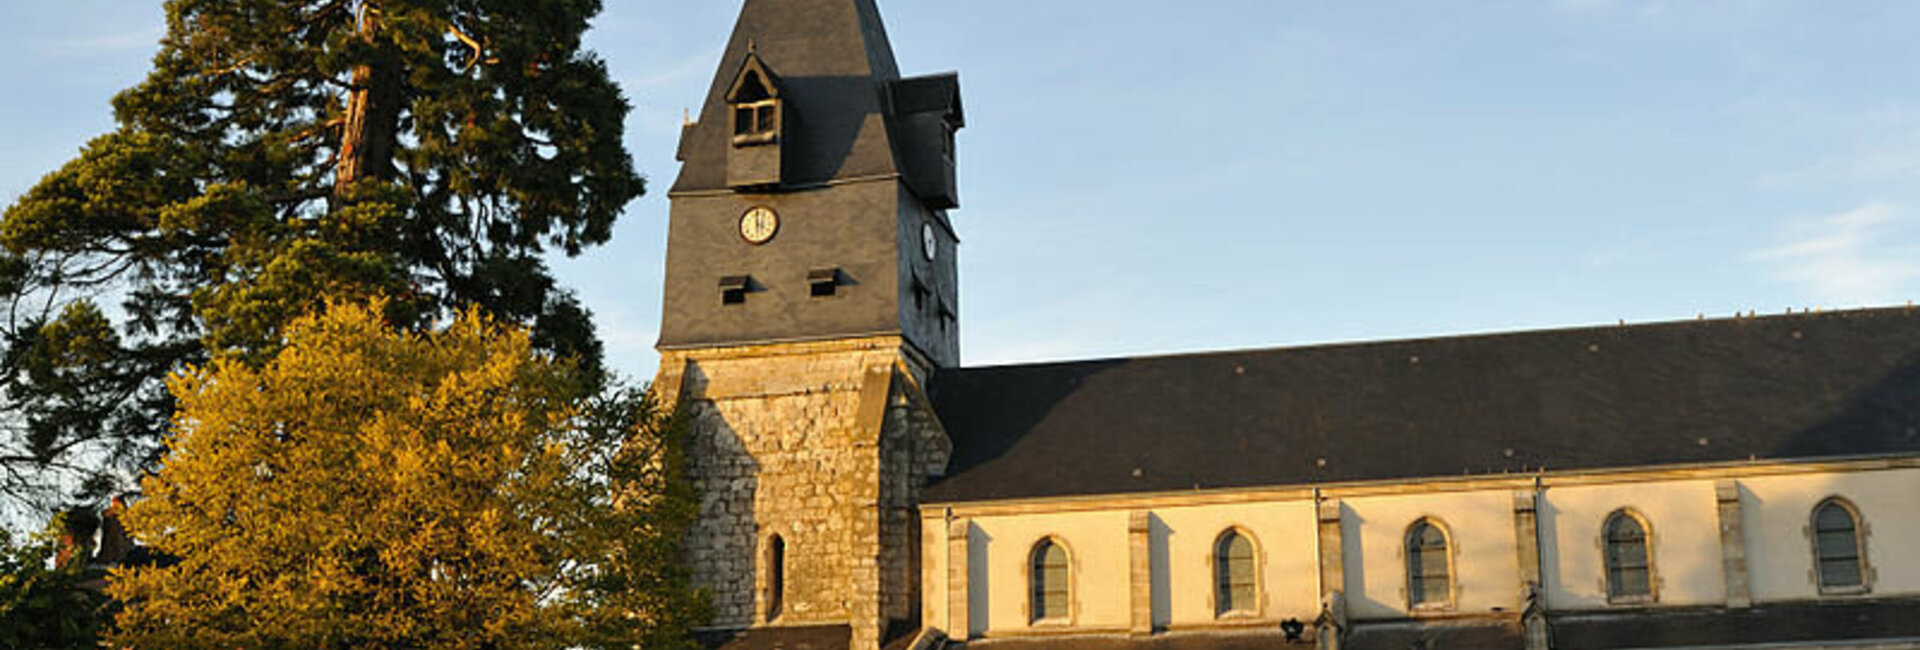 Flux La République du Centre Mairie de Aschères-le-Marché (45) Loiret